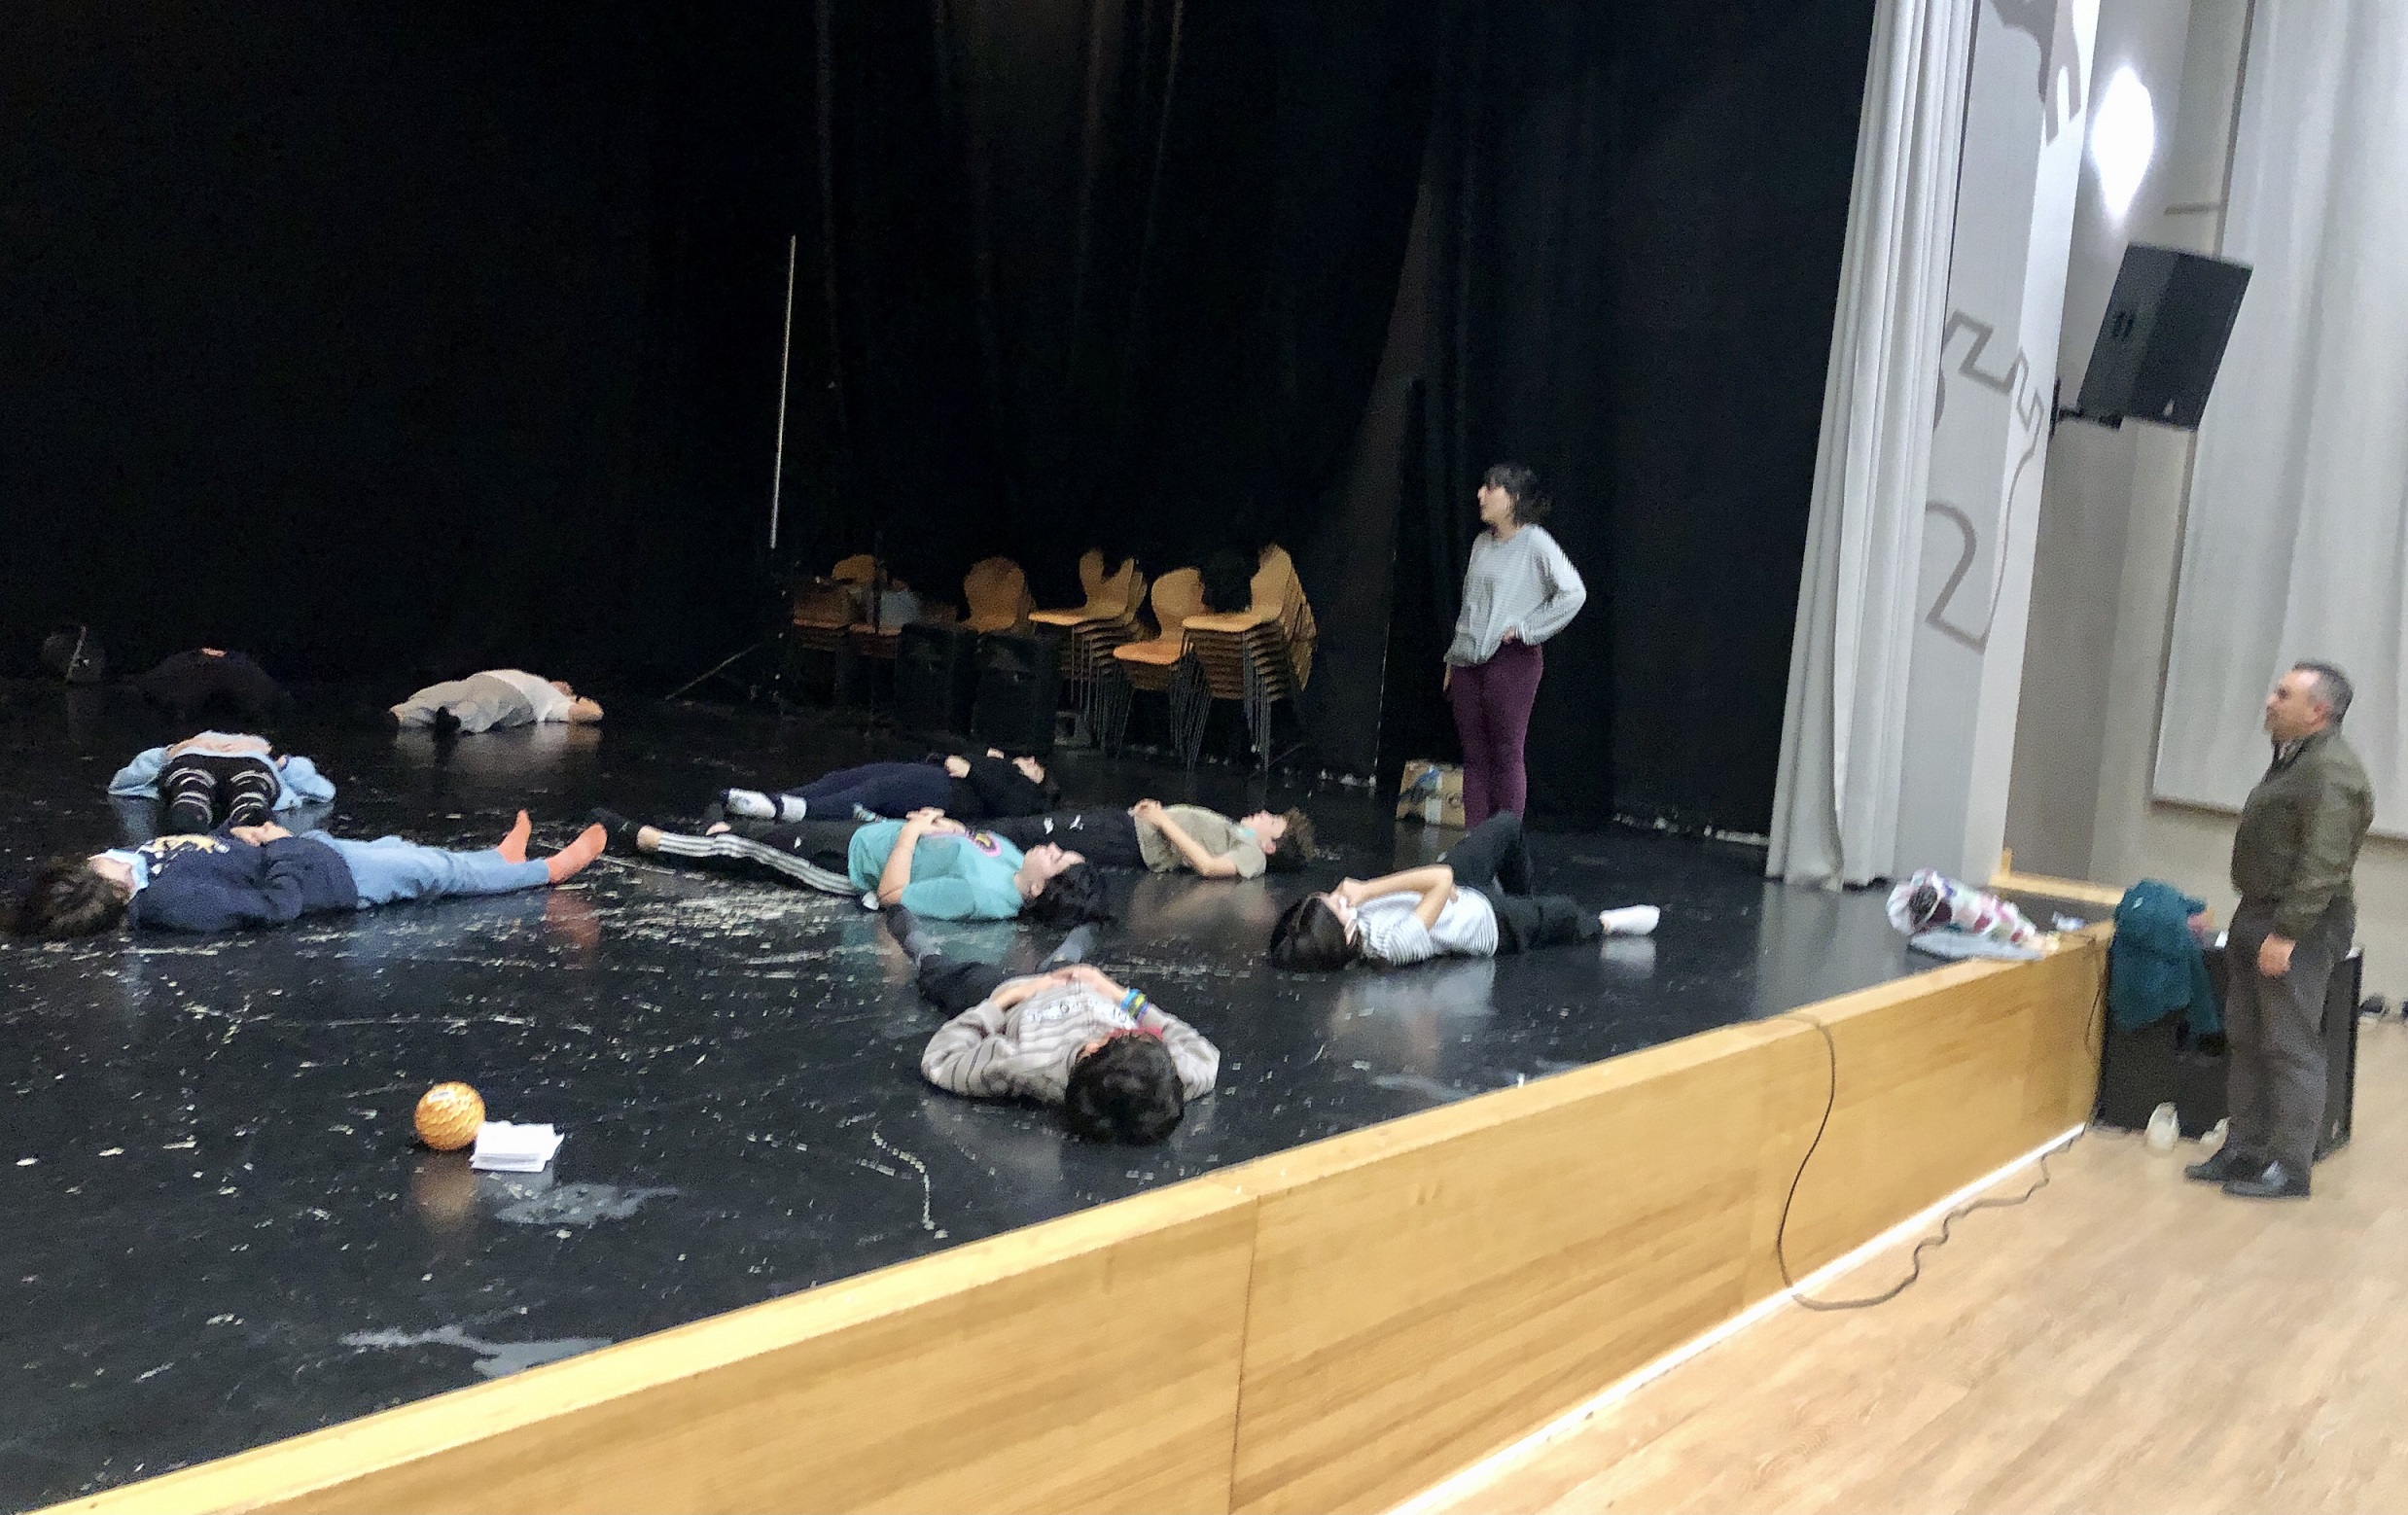 La nueva Escuela Municipal de Arte Dramático arranca en Almassora con jornadas de teatro